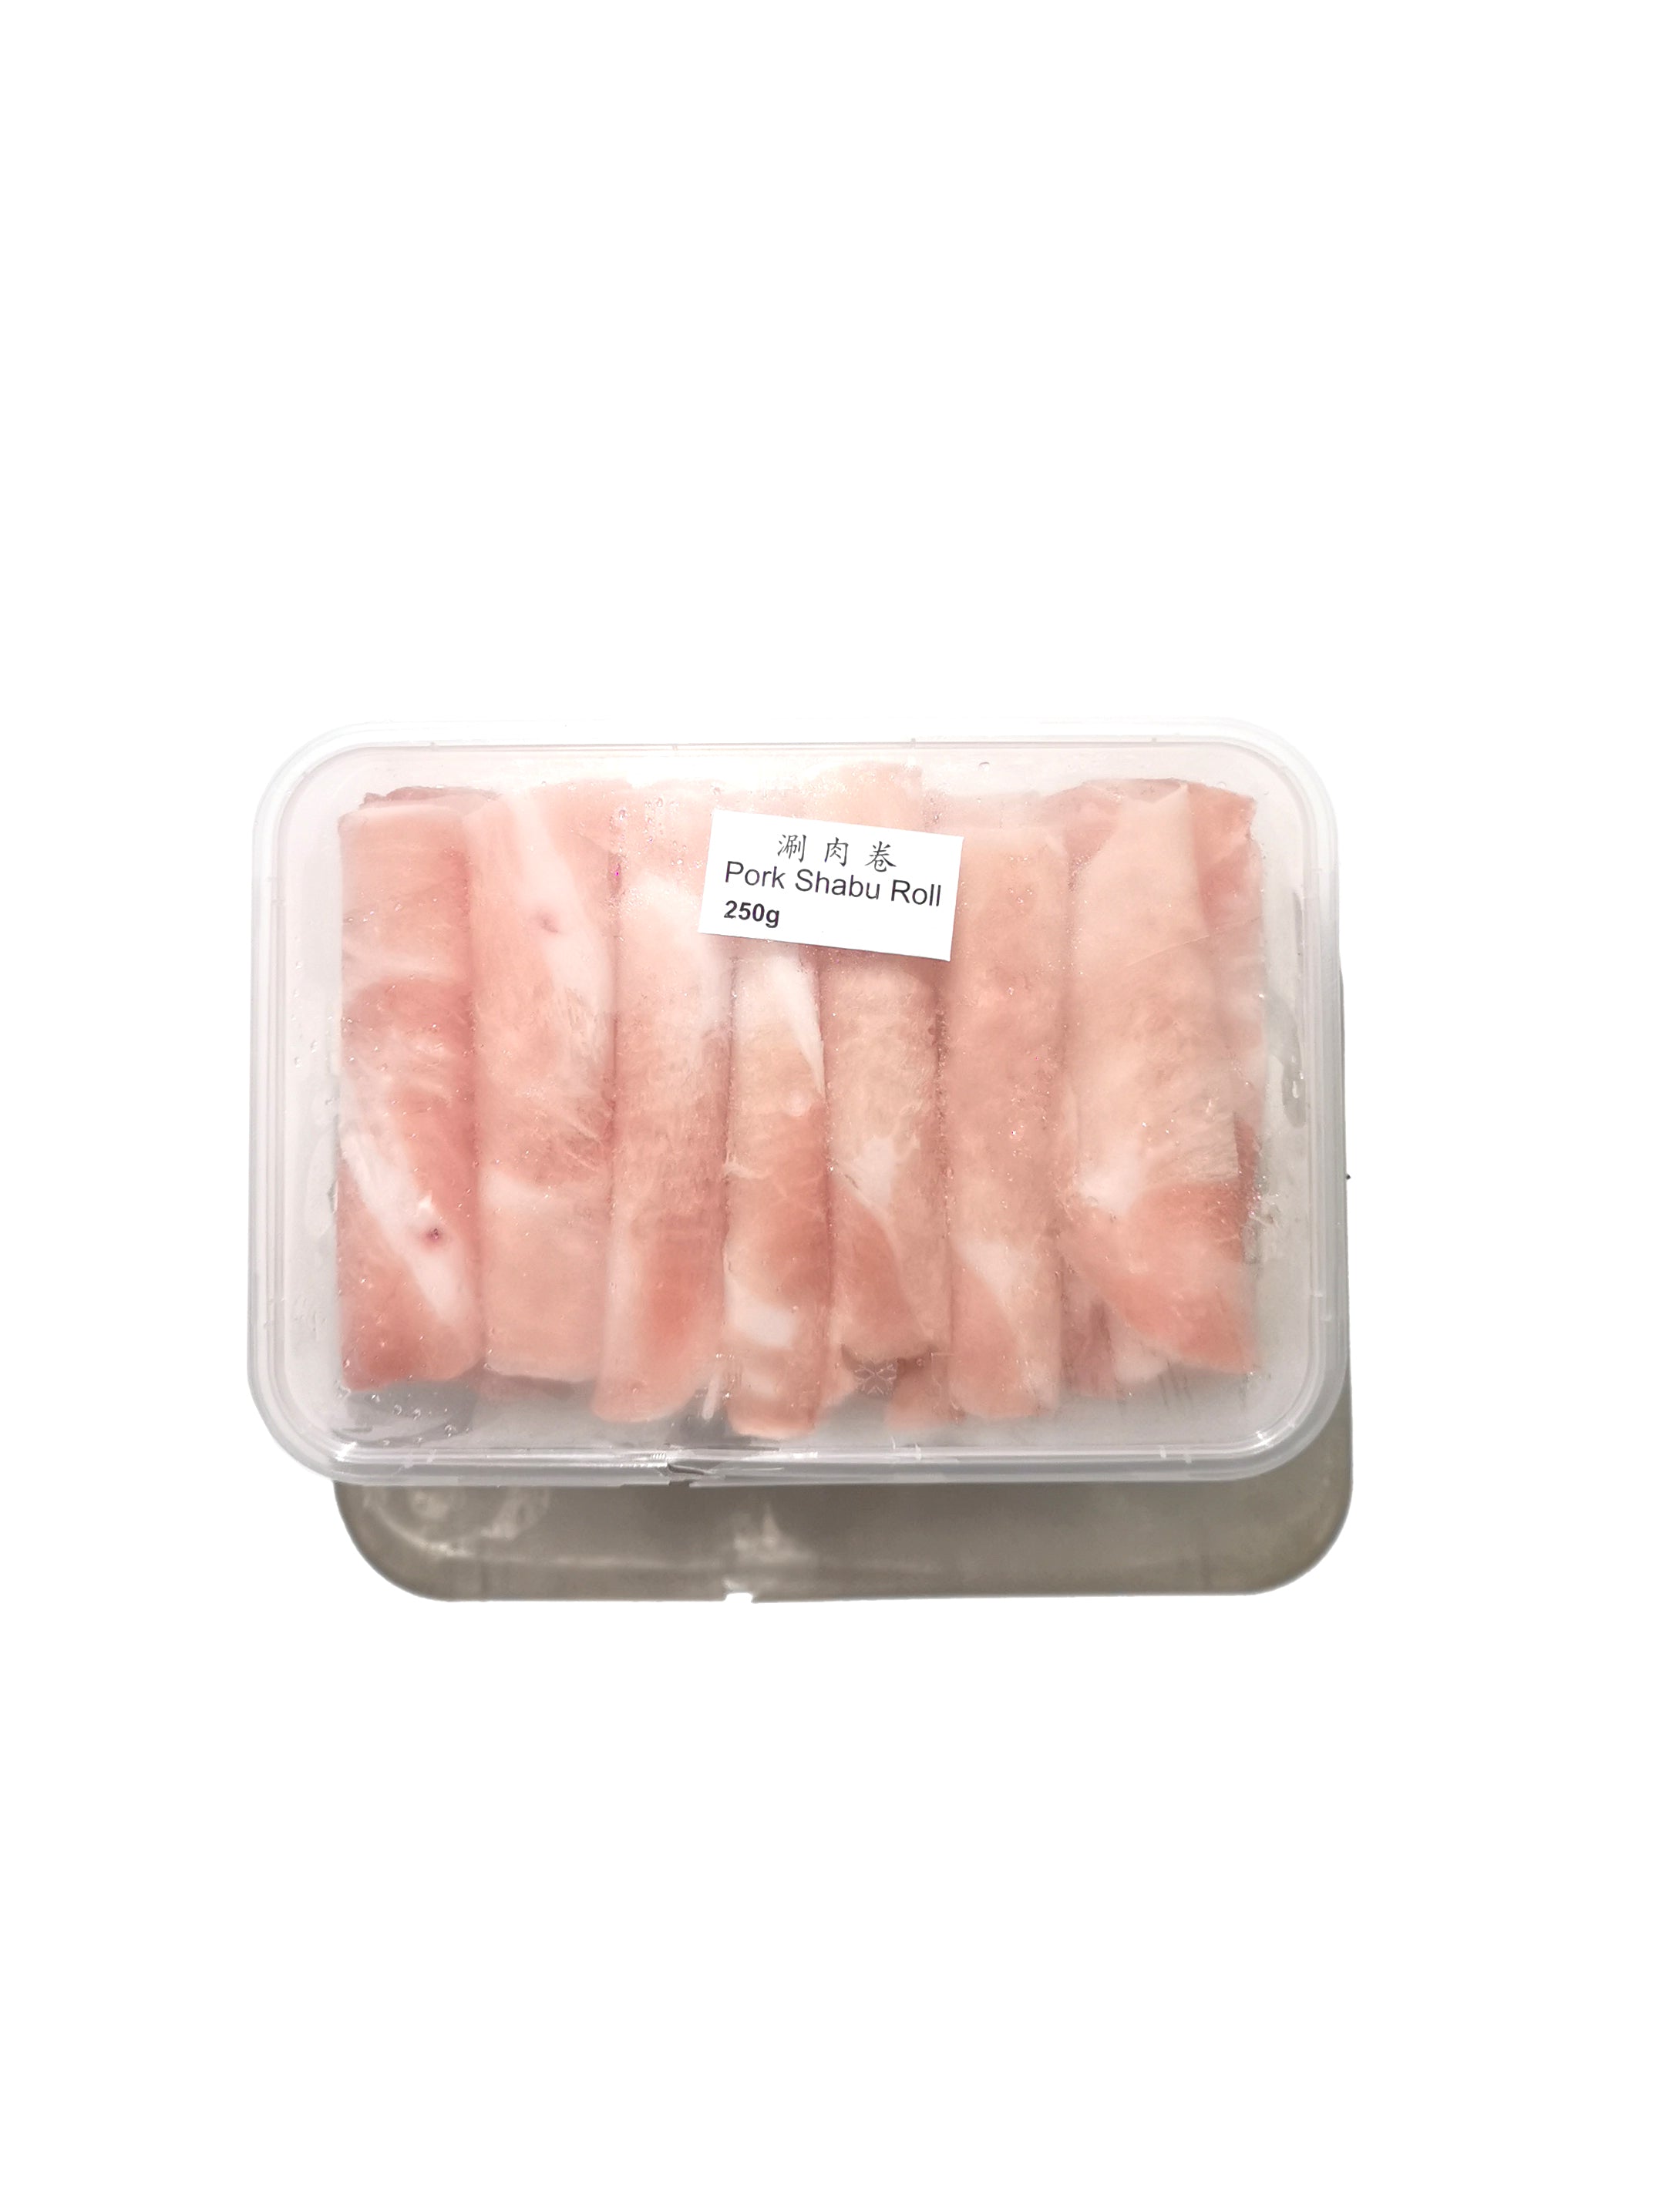 Shabu Pork Roll 火鍋豬肉片 - 1box